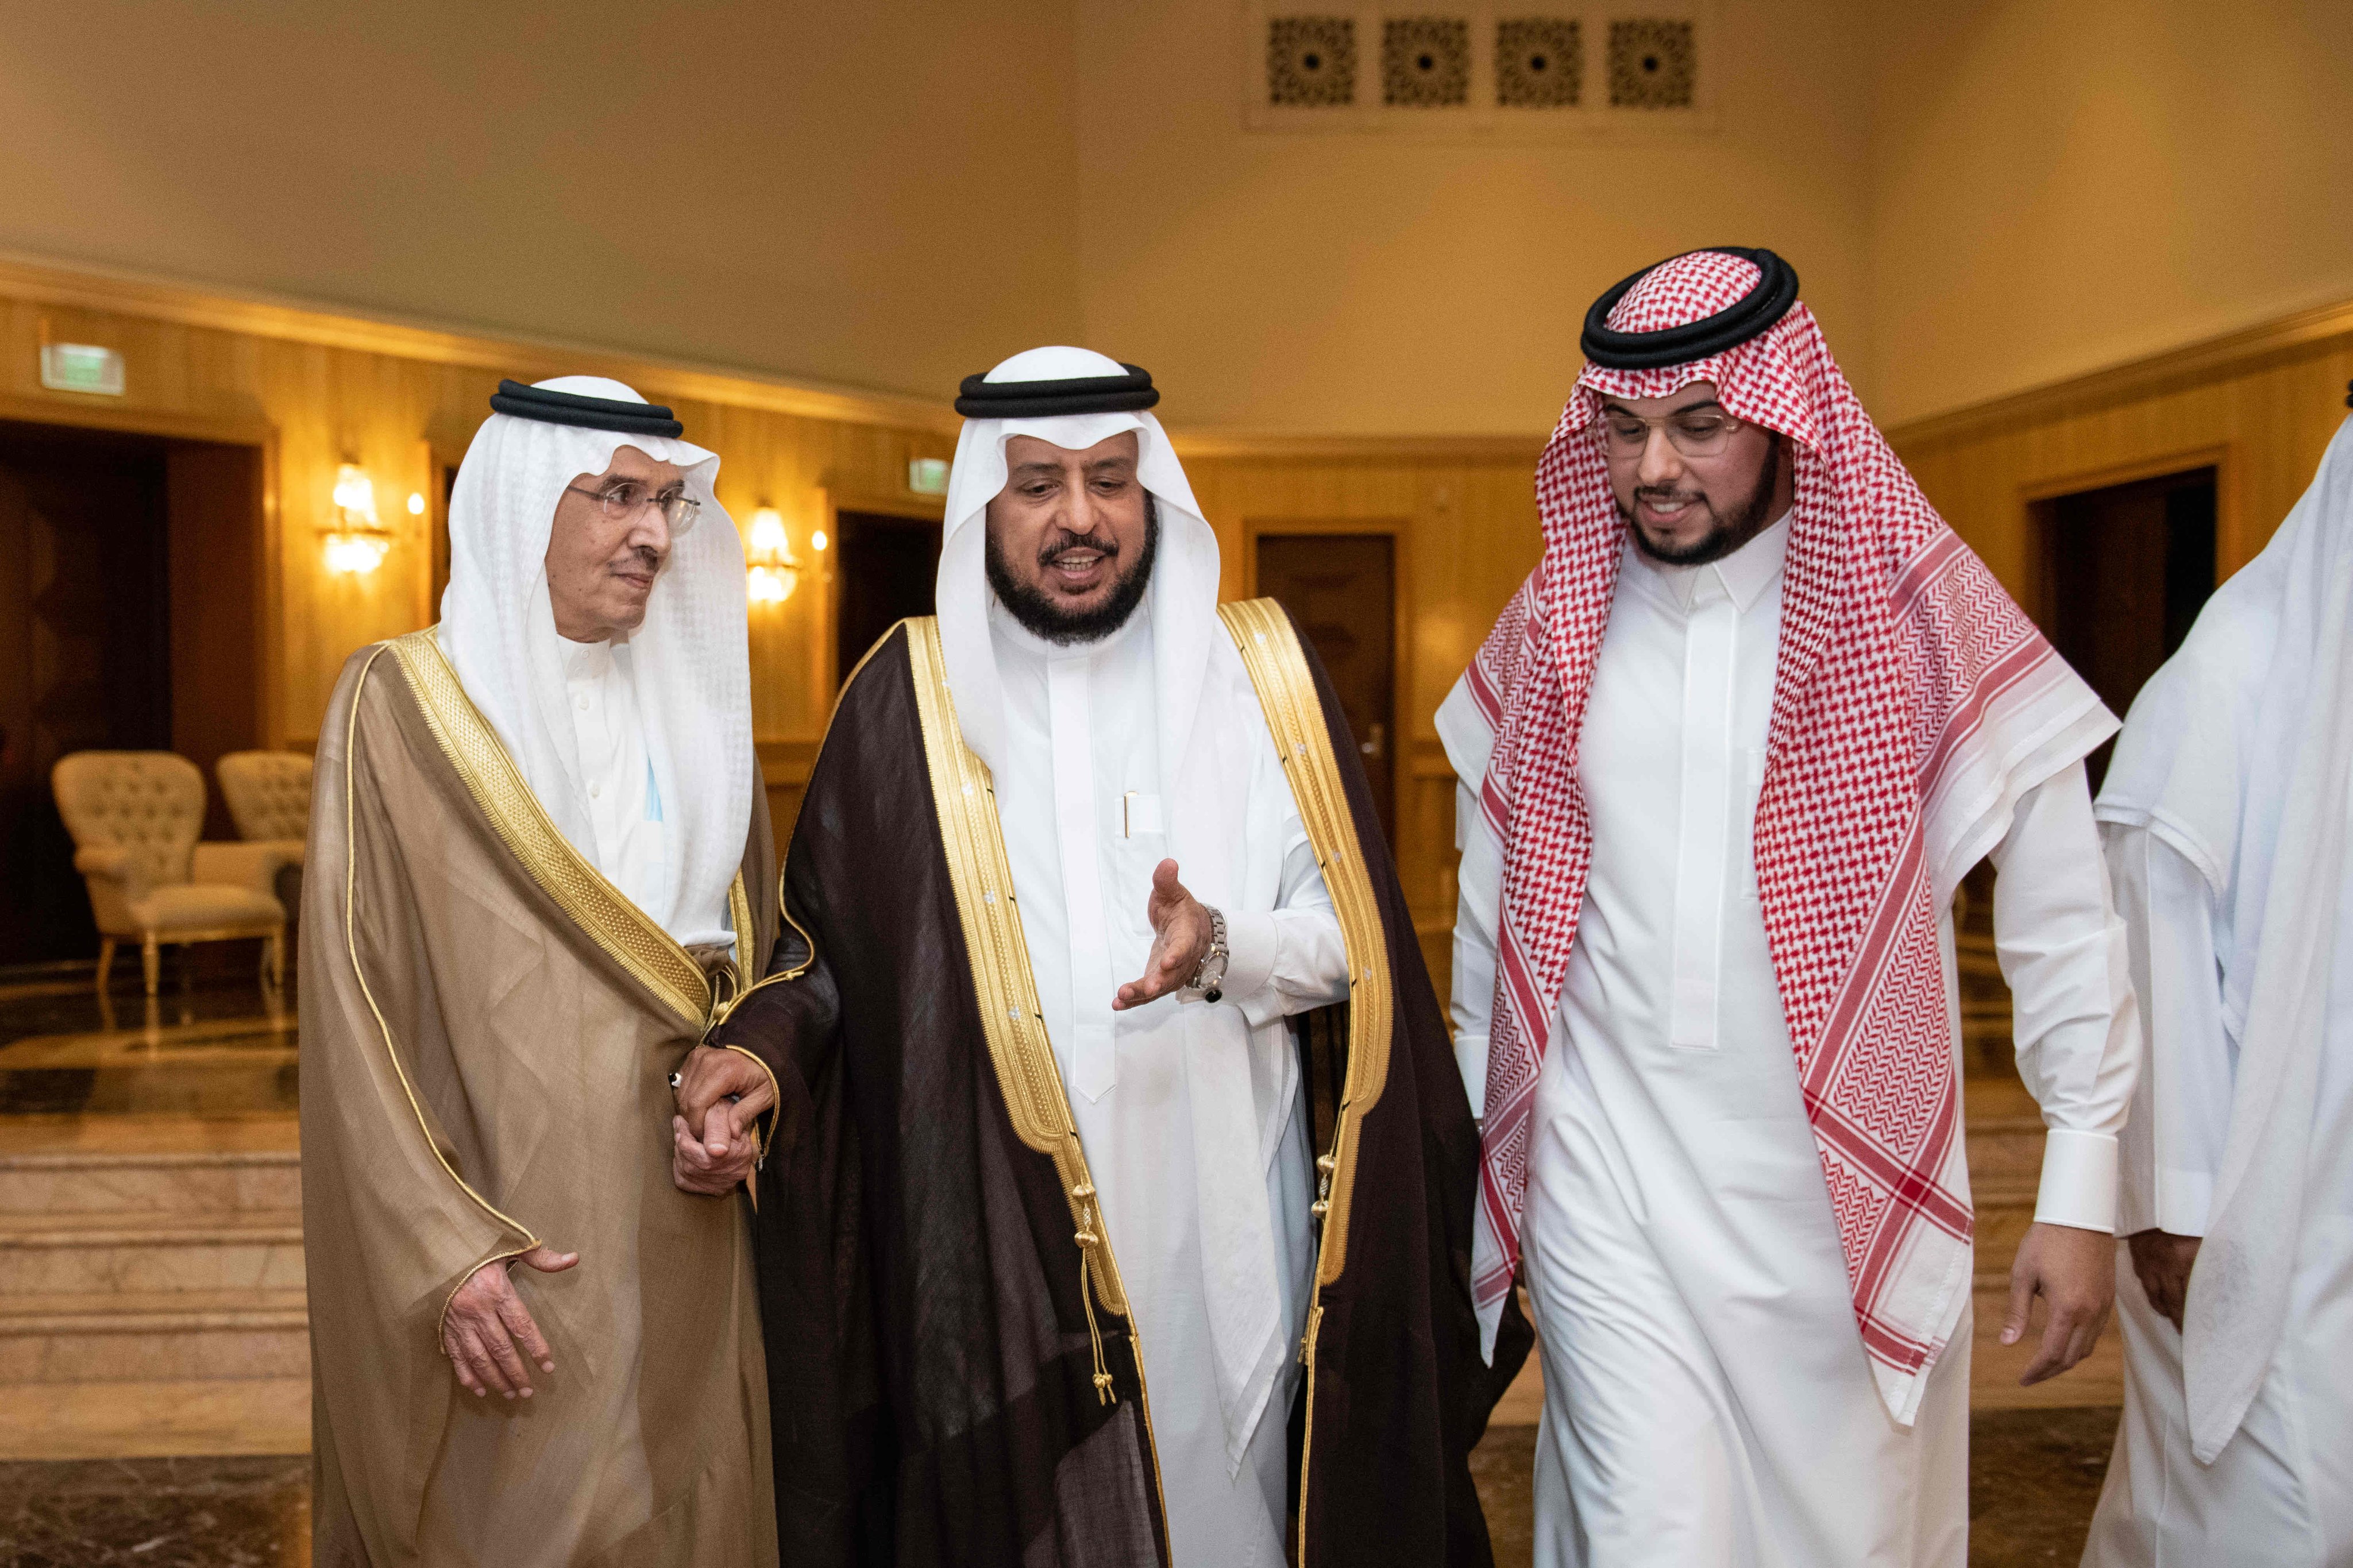 سعدتْ رابطة العالم الإسلامي‬⁩ باستضافة مجموعة من النُّخَب العلمية والفكرية والإعلامية السعودية‬⁩ ذات الاهتمام بأهداف الرابطة